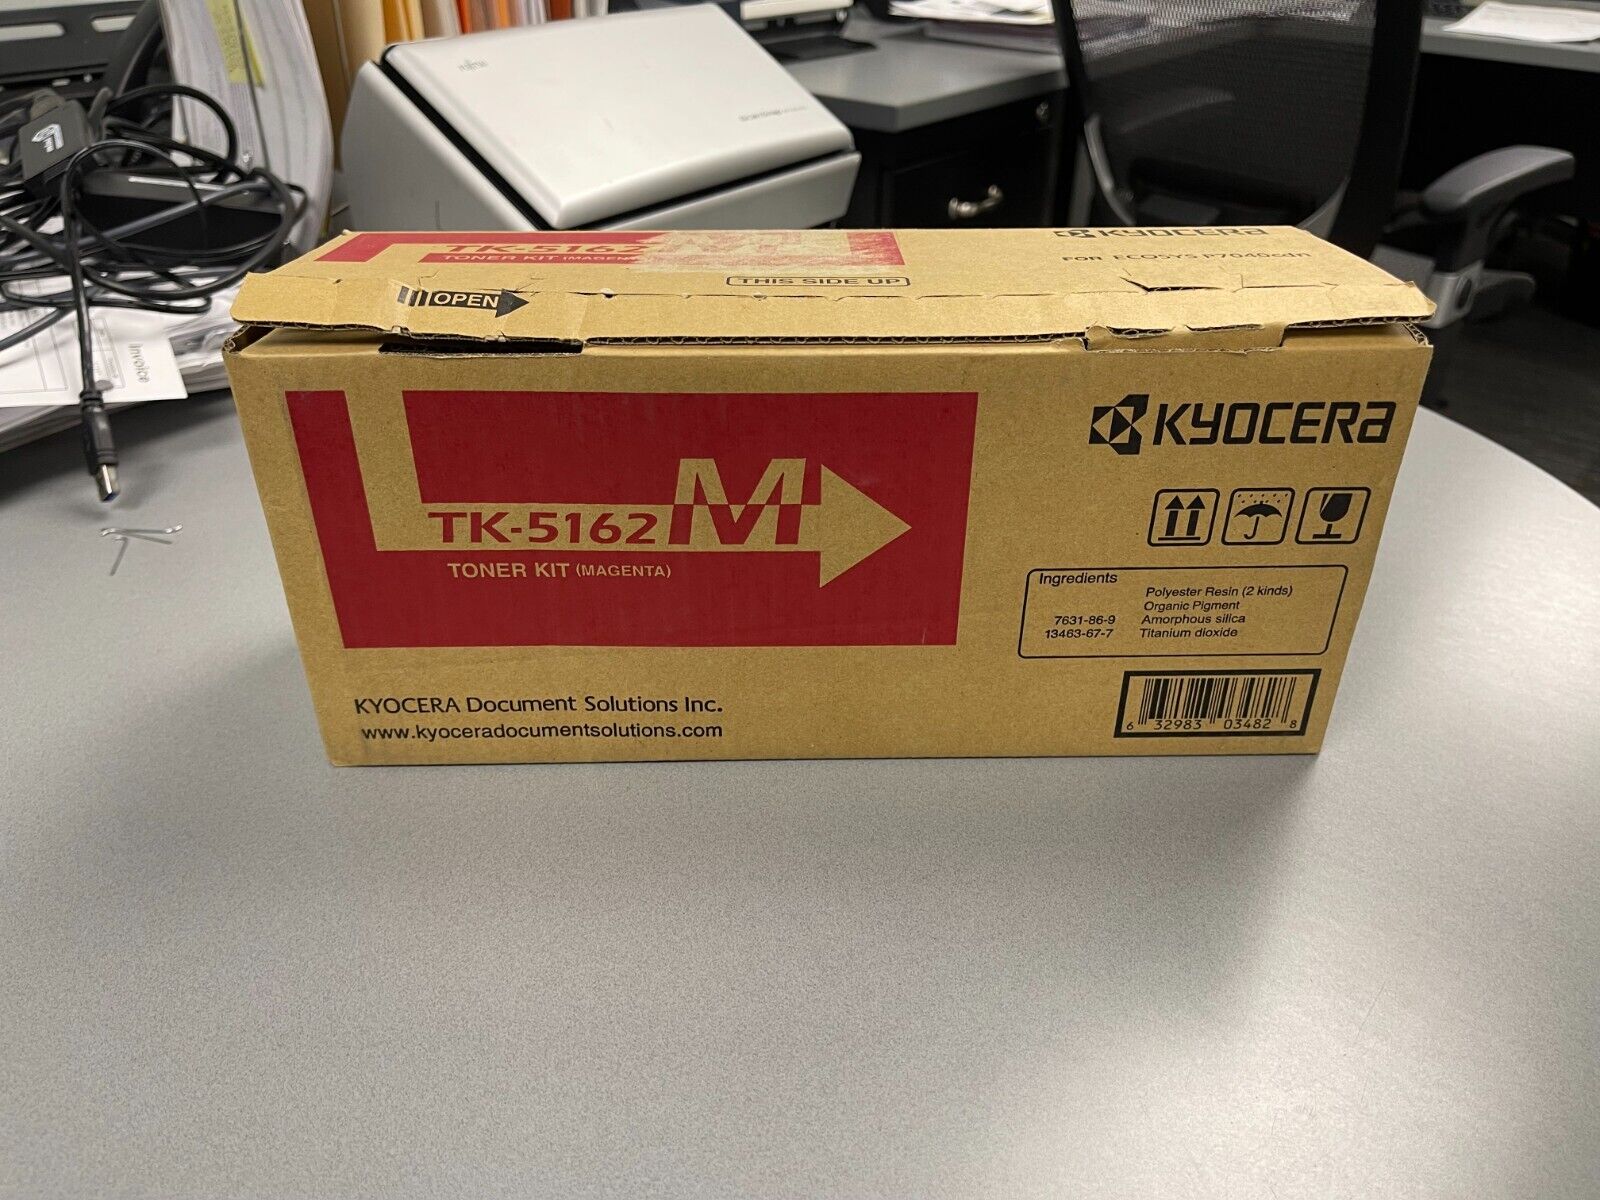 Kyocera Toner Kit TK-5162M - Open Box